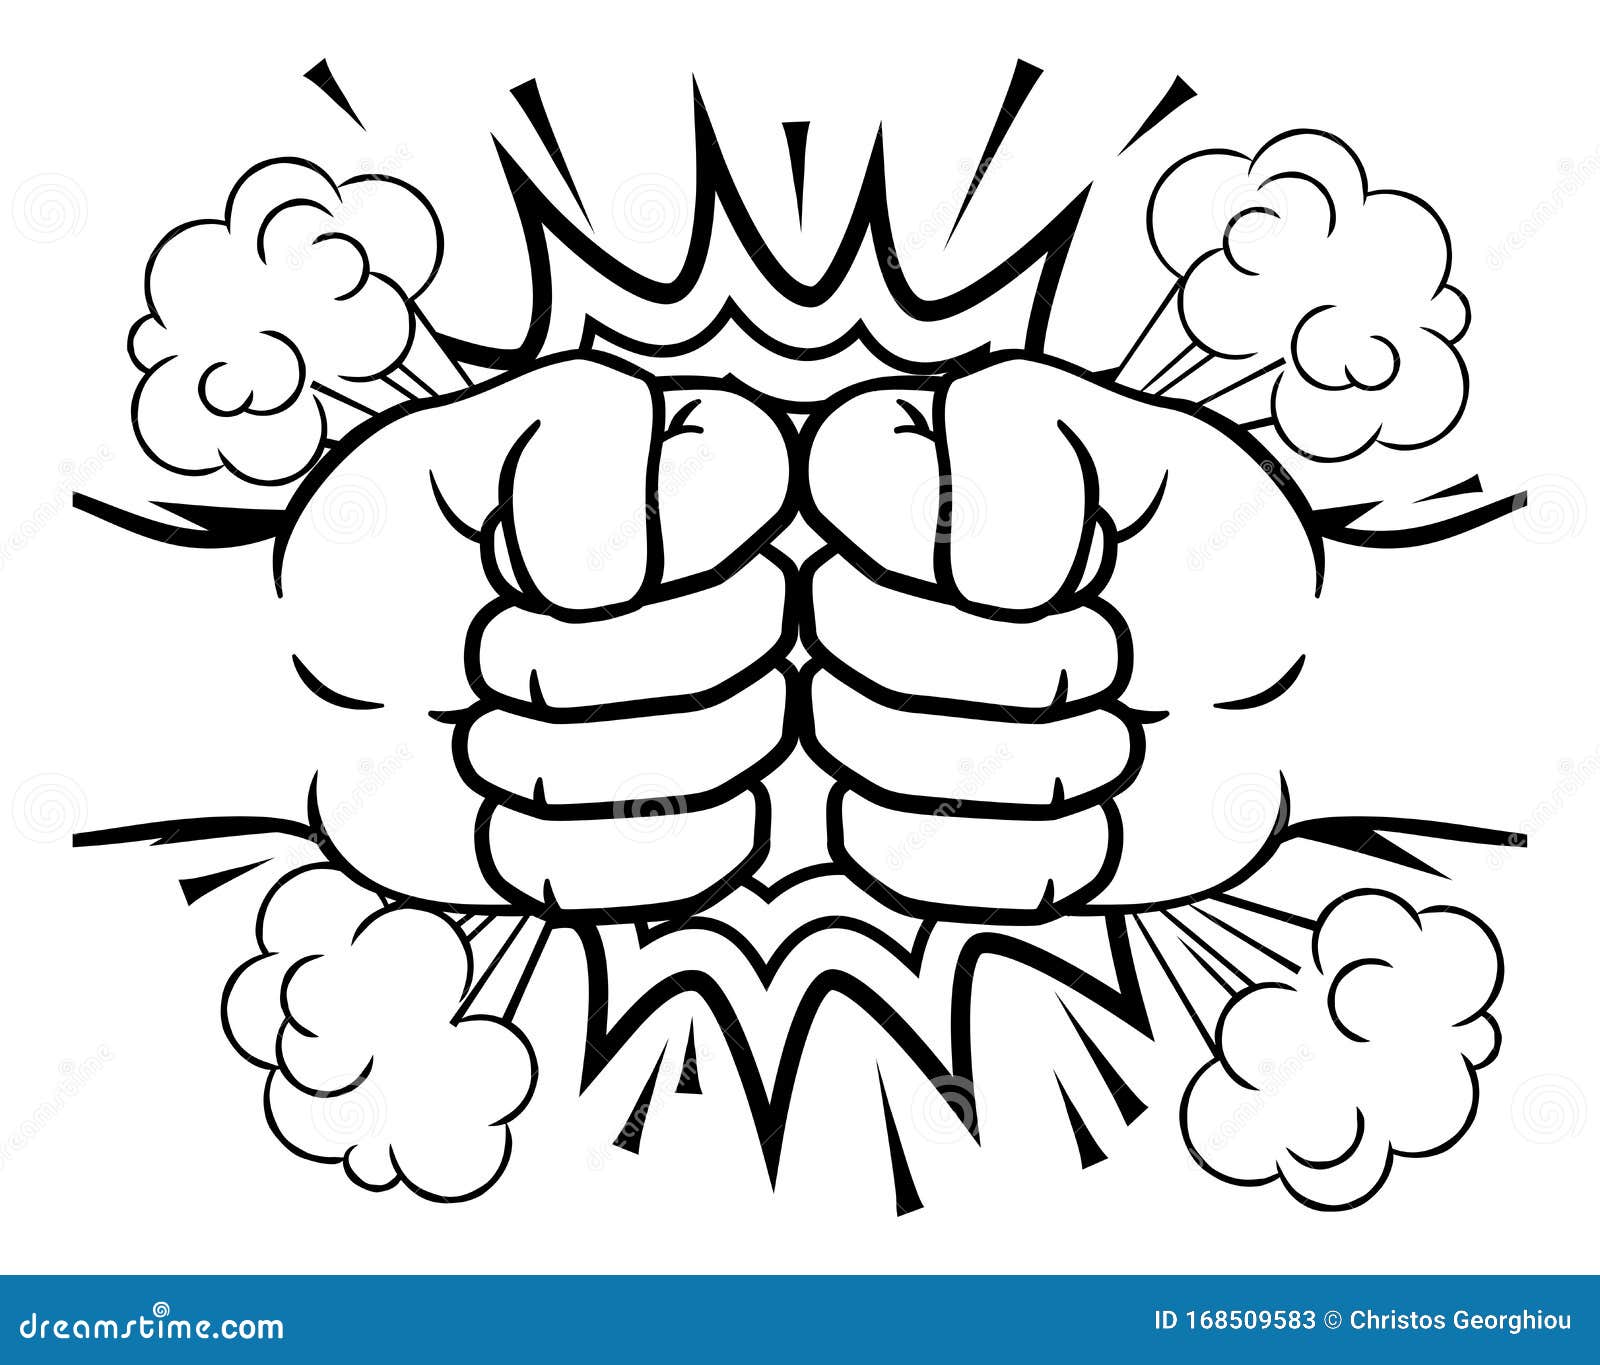 Fist Bump Explosion Hands Punch Cartoon | CartoonDealer.com #168509583